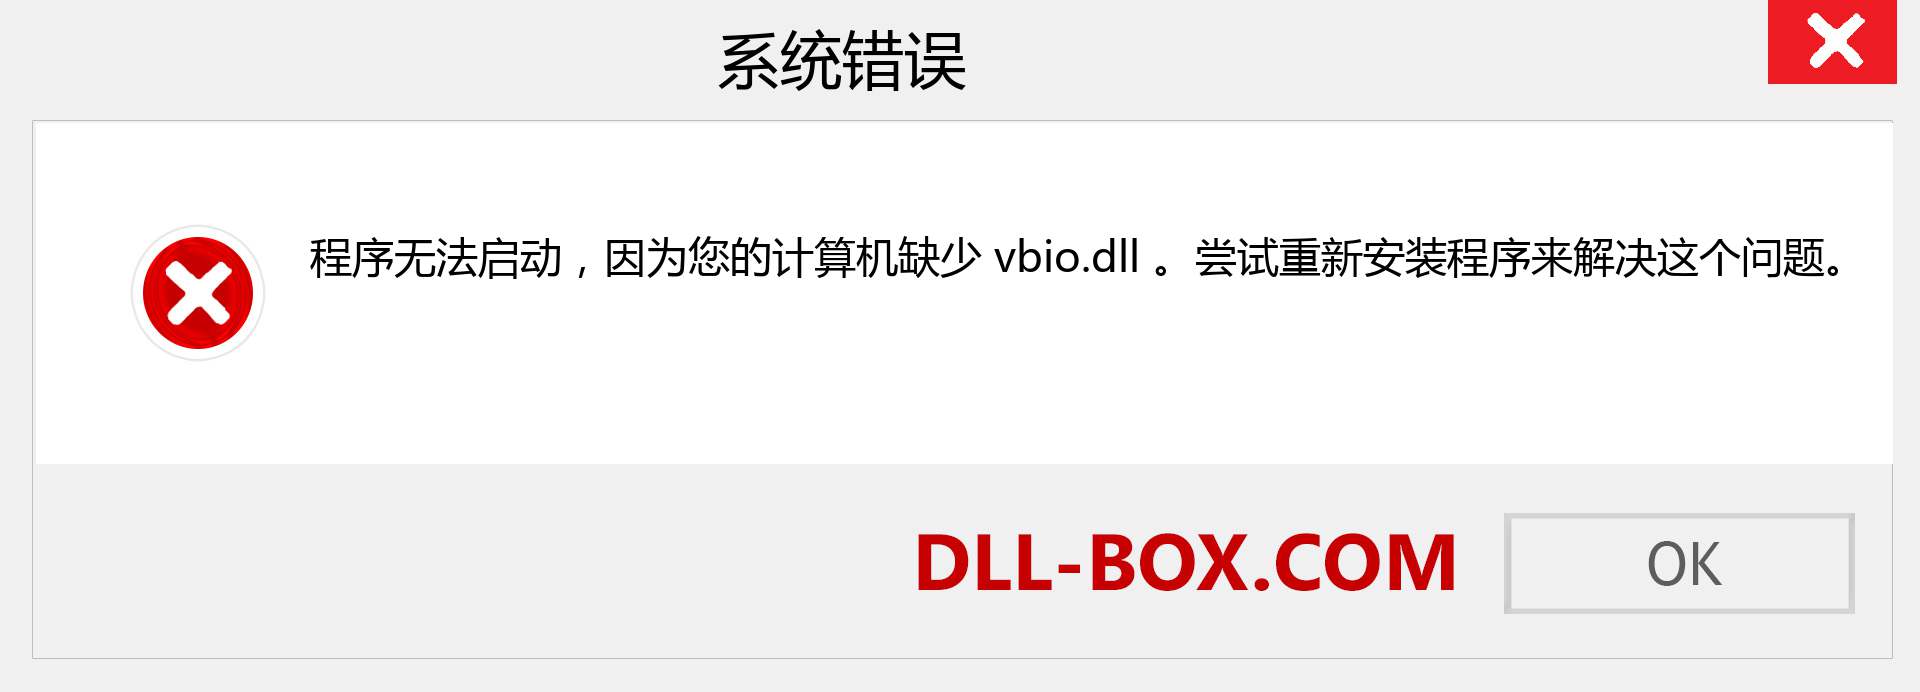 vbio.dll 文件丢失？。 适用于 Windows 7、8、10 的下载 - 修复 Windows、照片、图像上的 vbio dll 丢失错误